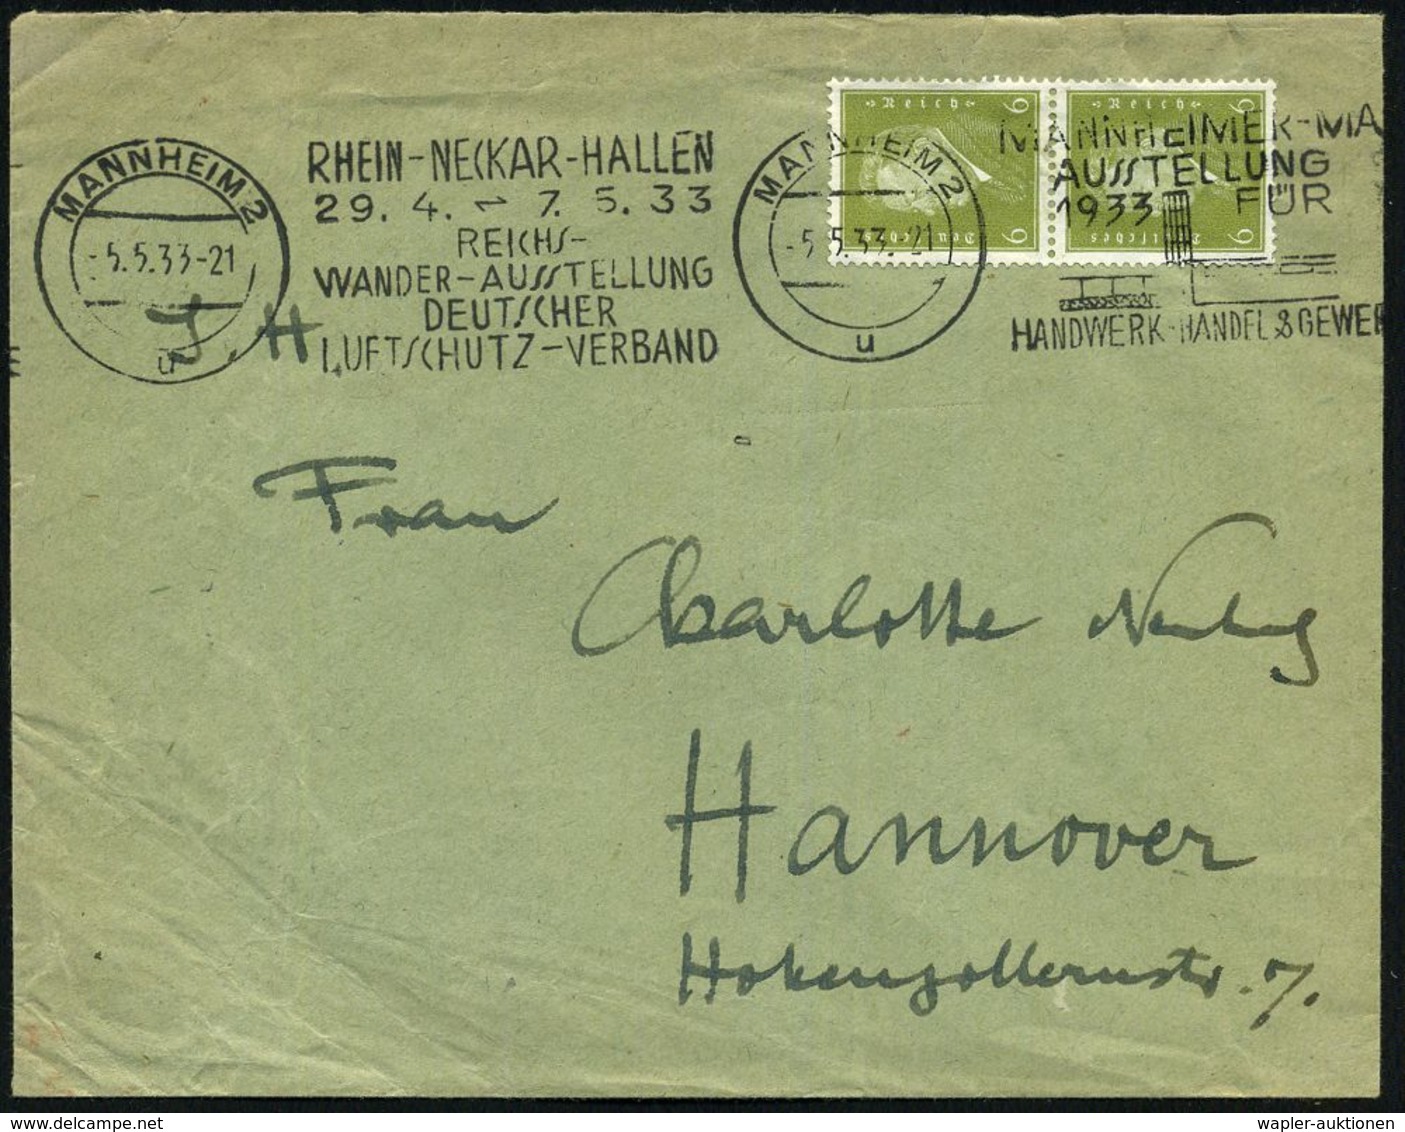 MANNHEIM 2/ U/ RHEIN-NECKAR-HALLEN/ ..REICHS-/ WANDER-AUSST./ DEUTSCHER/ LUFTSCHUTZ-VERBAND 1933 (5.5.) Seltener BdMWSt  - Feuerwehr